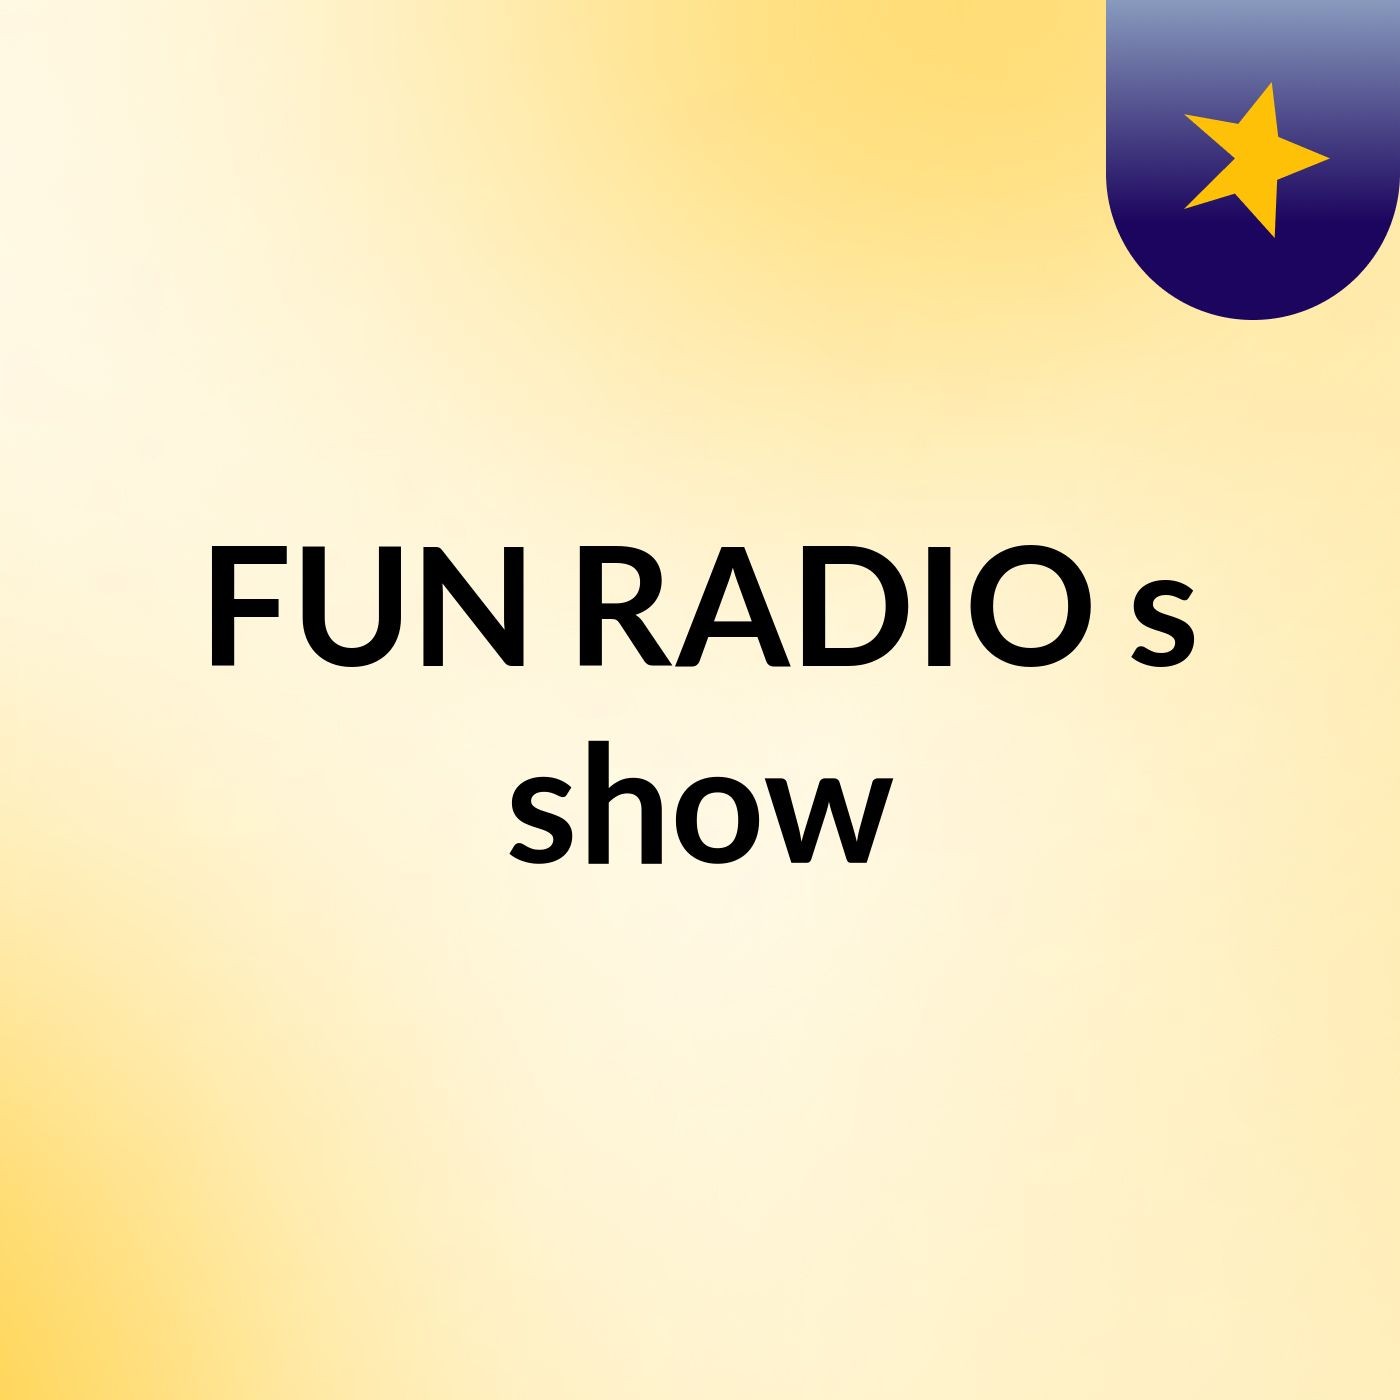 FUN RADIO's show